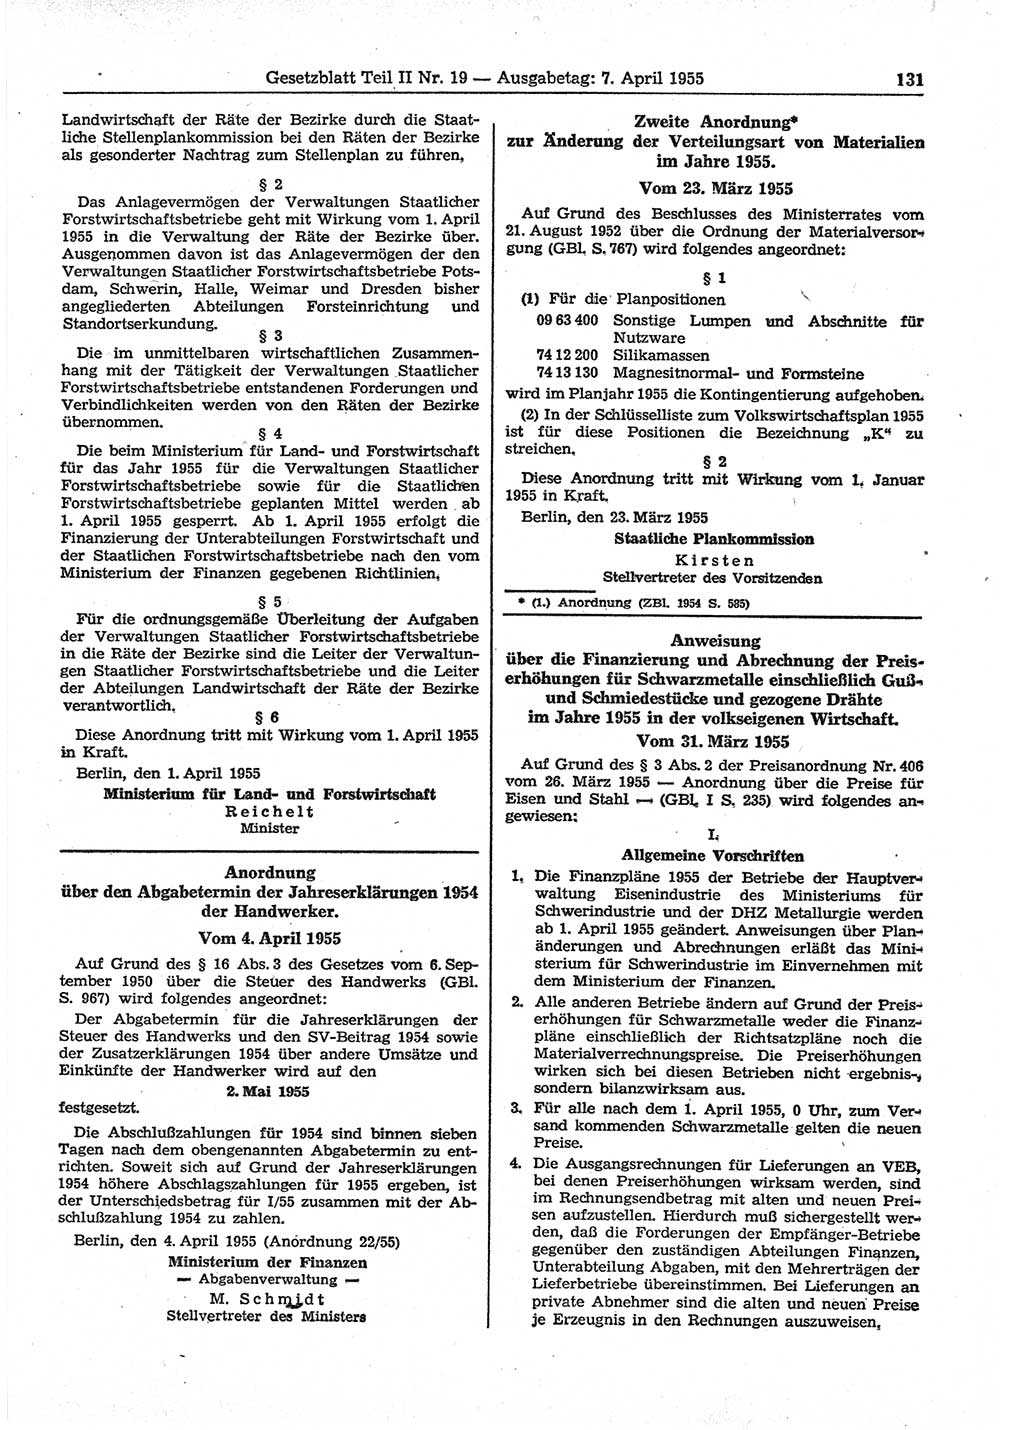 Gesetzblatt (GBl.) der Deutschen Demokratischen Republik (DDR) Teil ⅠⅠ 1955, Seite 131 (GBl. DDR ⅠⅠ 1955, S. 131)